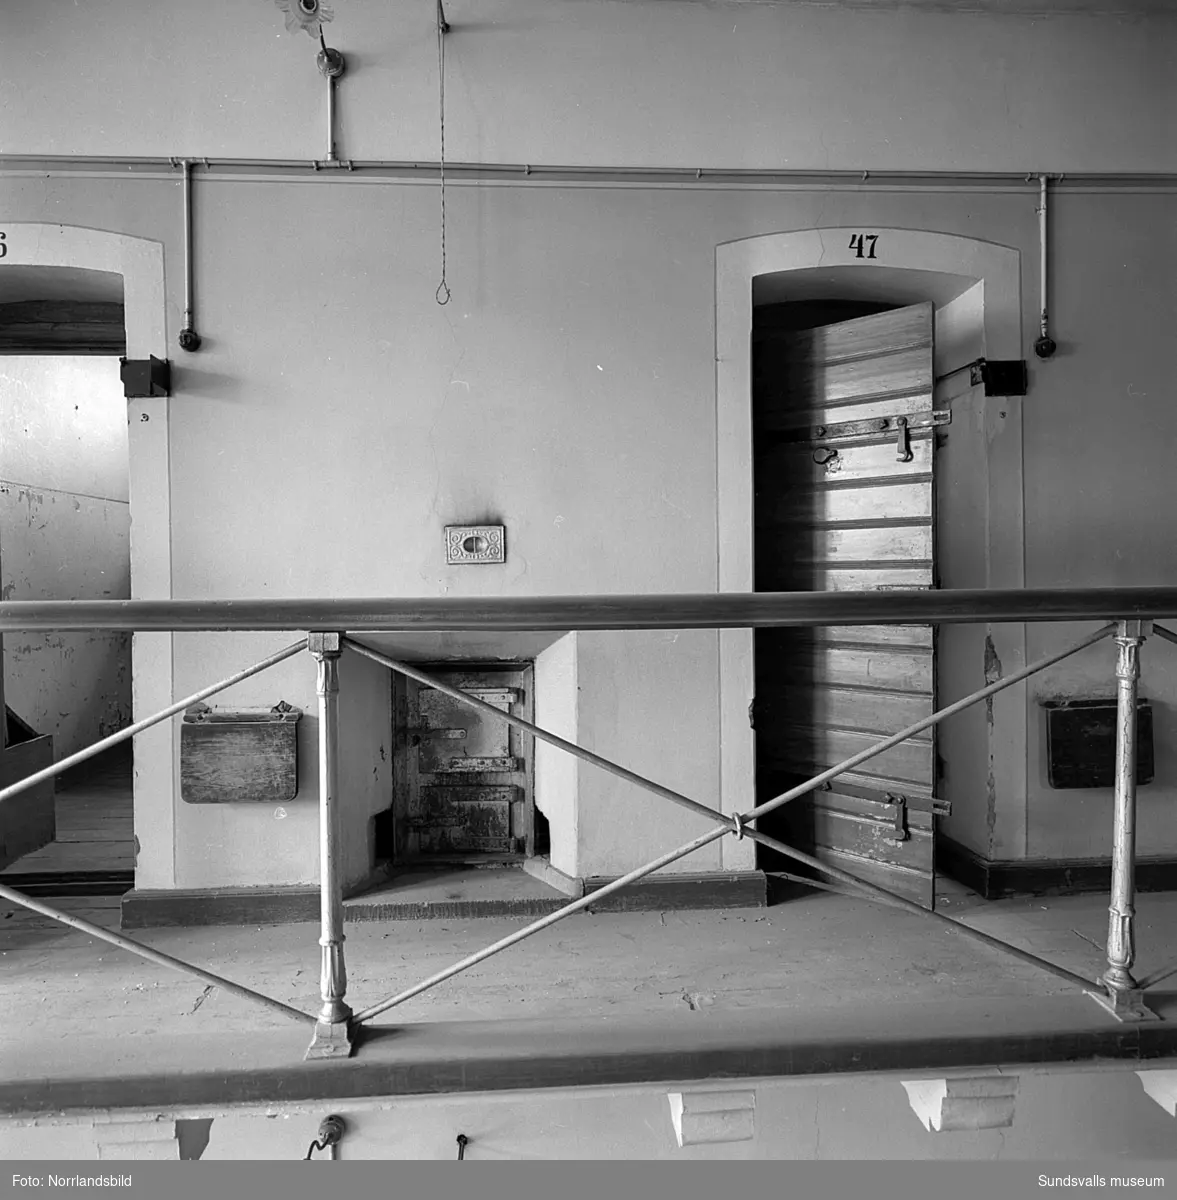 Kronohäktet i Sundsvall inrymde ett 50-tal celler fördelade på tre våningar med järntrappor emellan och klassiska avsatser utanför celldörrarna. Fängelset som byggdes 1879 var i bruk fram till 1946 och revs sedan 1959 för att ge plats för bygget av Åkersviks skola. Interiörbilder.